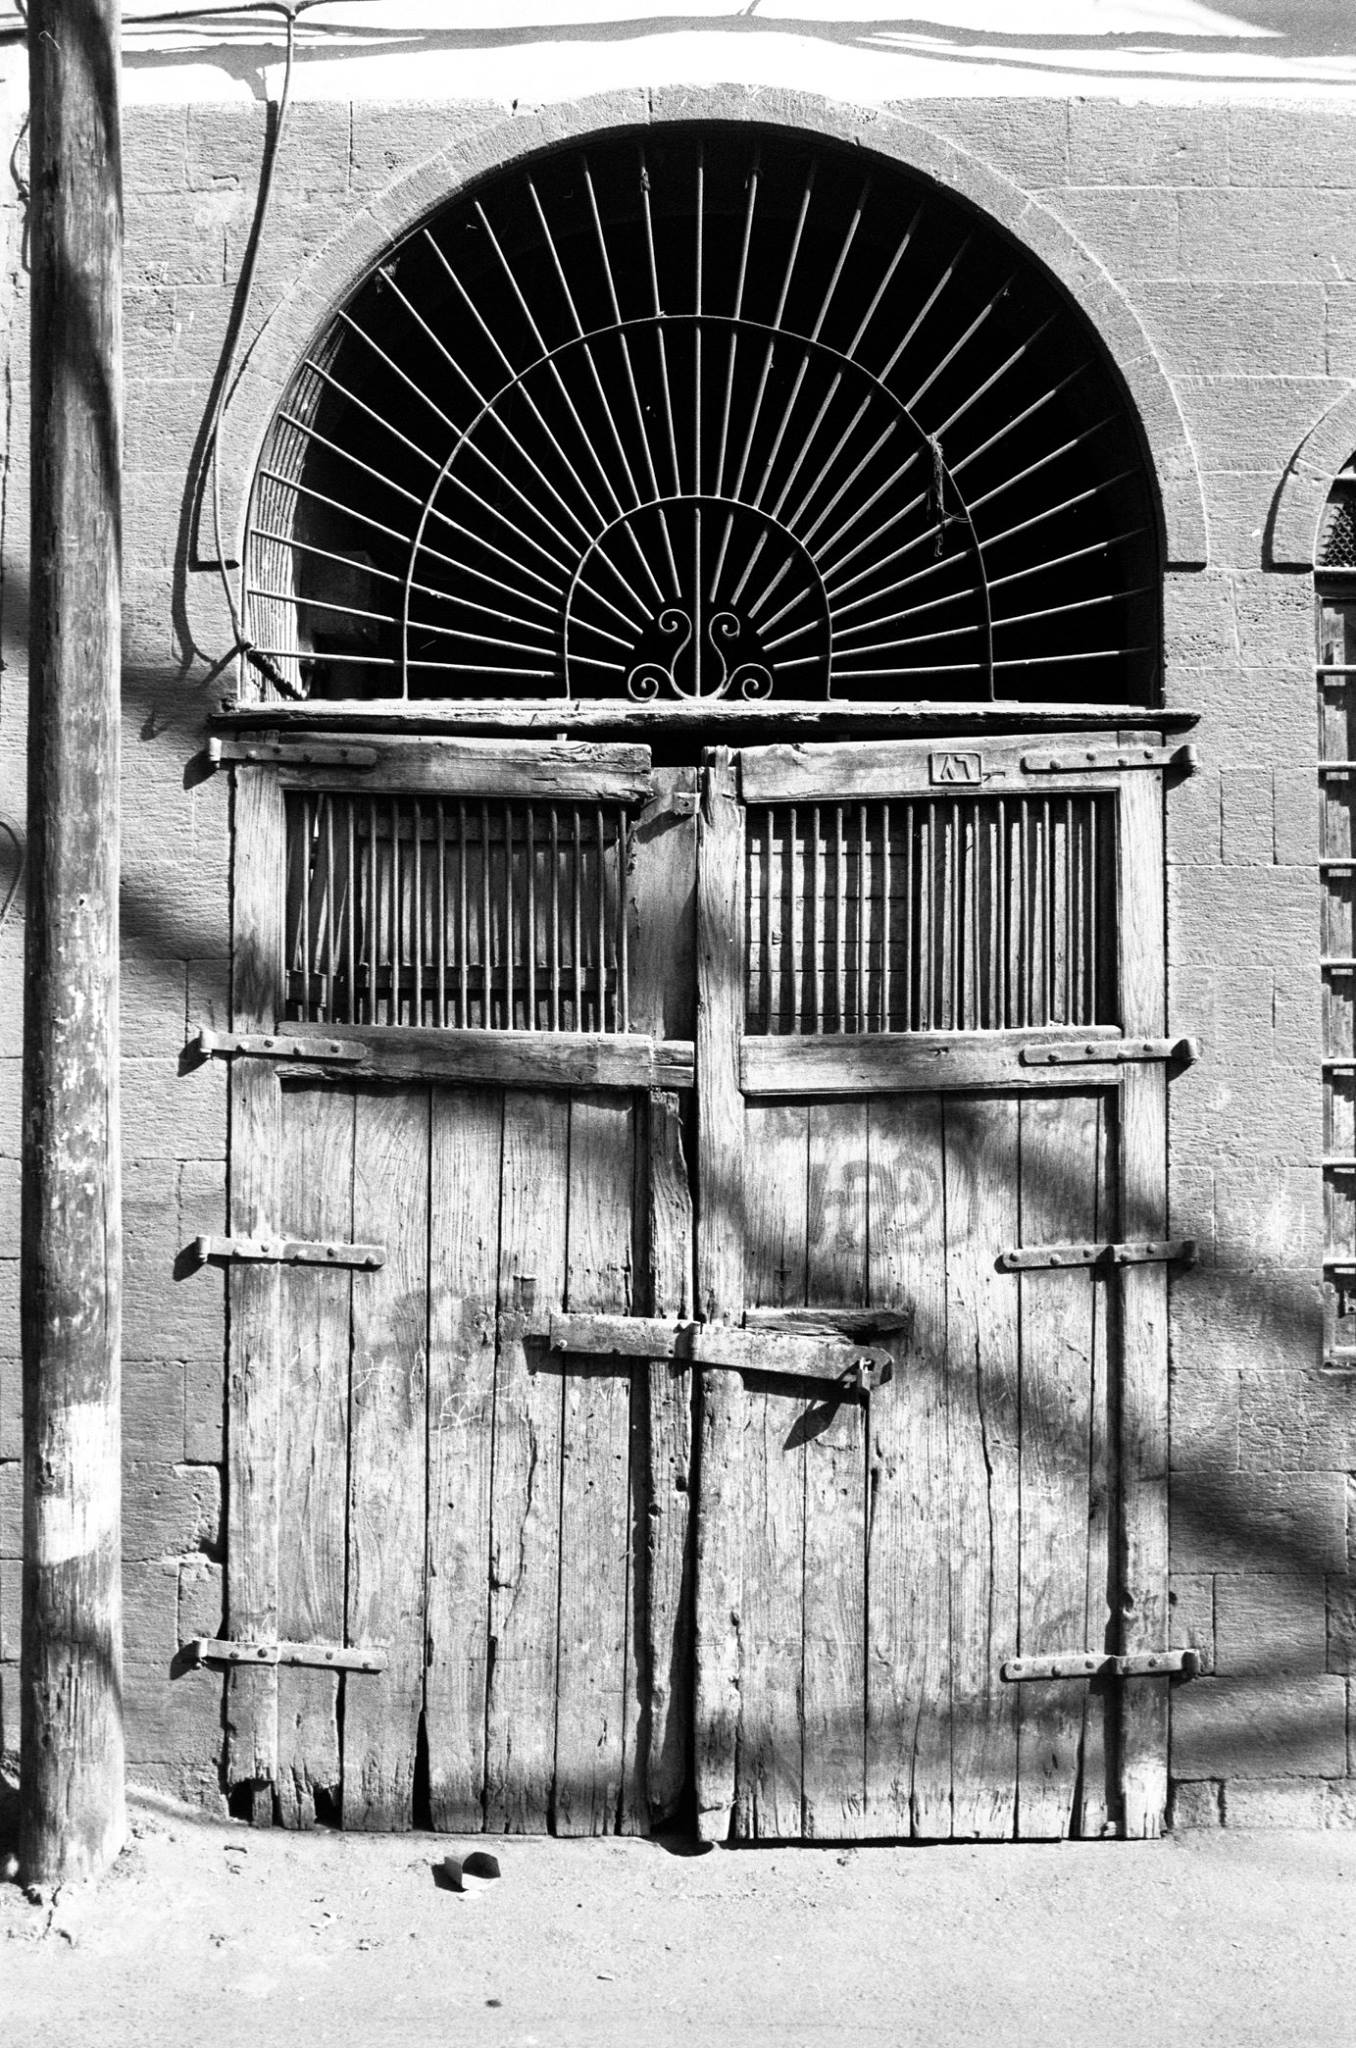 التاريخ السوري المعاصر - أحد أبواب المنازل في محلة طالع الفضة بدمشق القديمة عام 1992